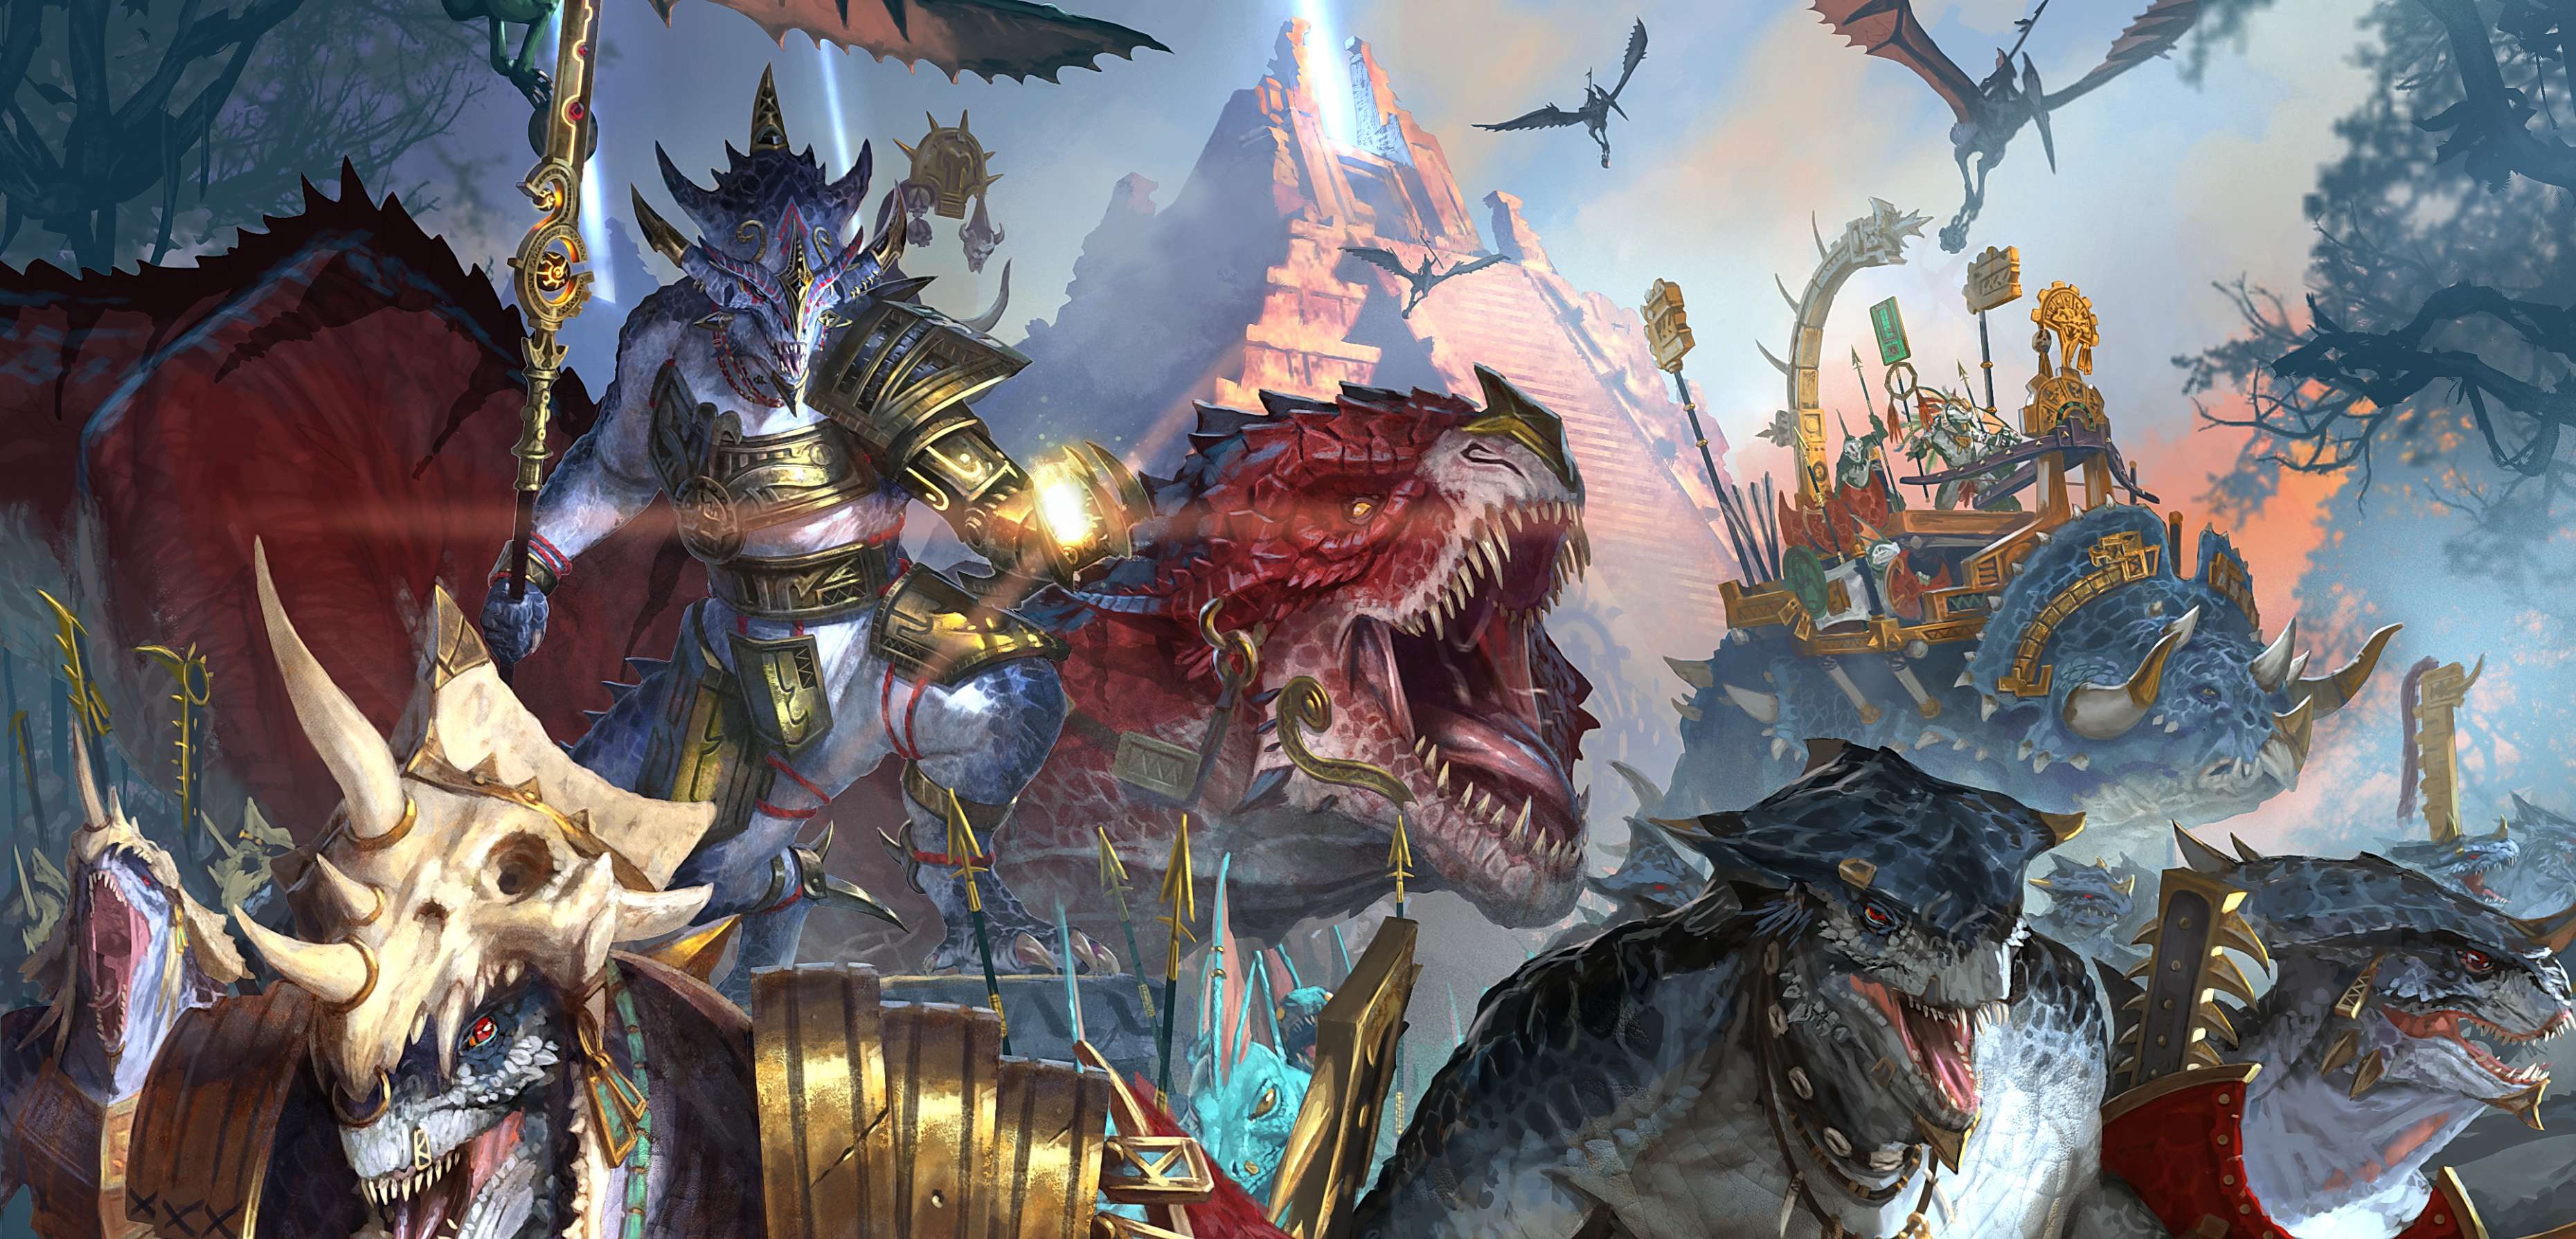 Total War: Warhammer II chwalony przez dziennikarzy! Przegląd ocen z recenzji